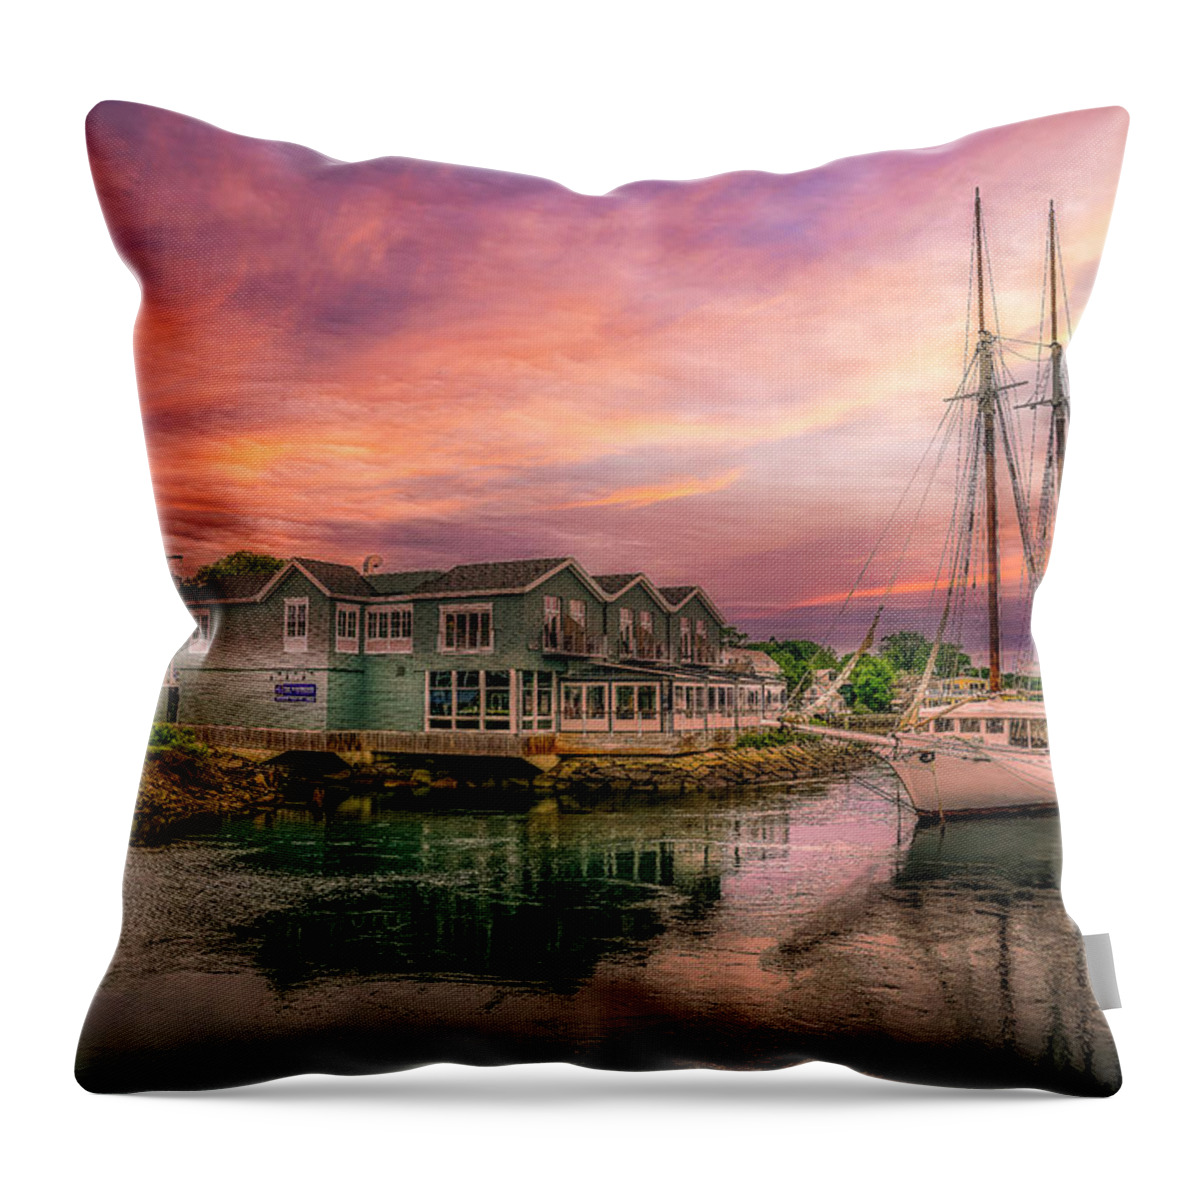 Spirit Of Massachusetts Throw Pillow featuring the photograph Spirit of Massachusetts by Penny Polakoff